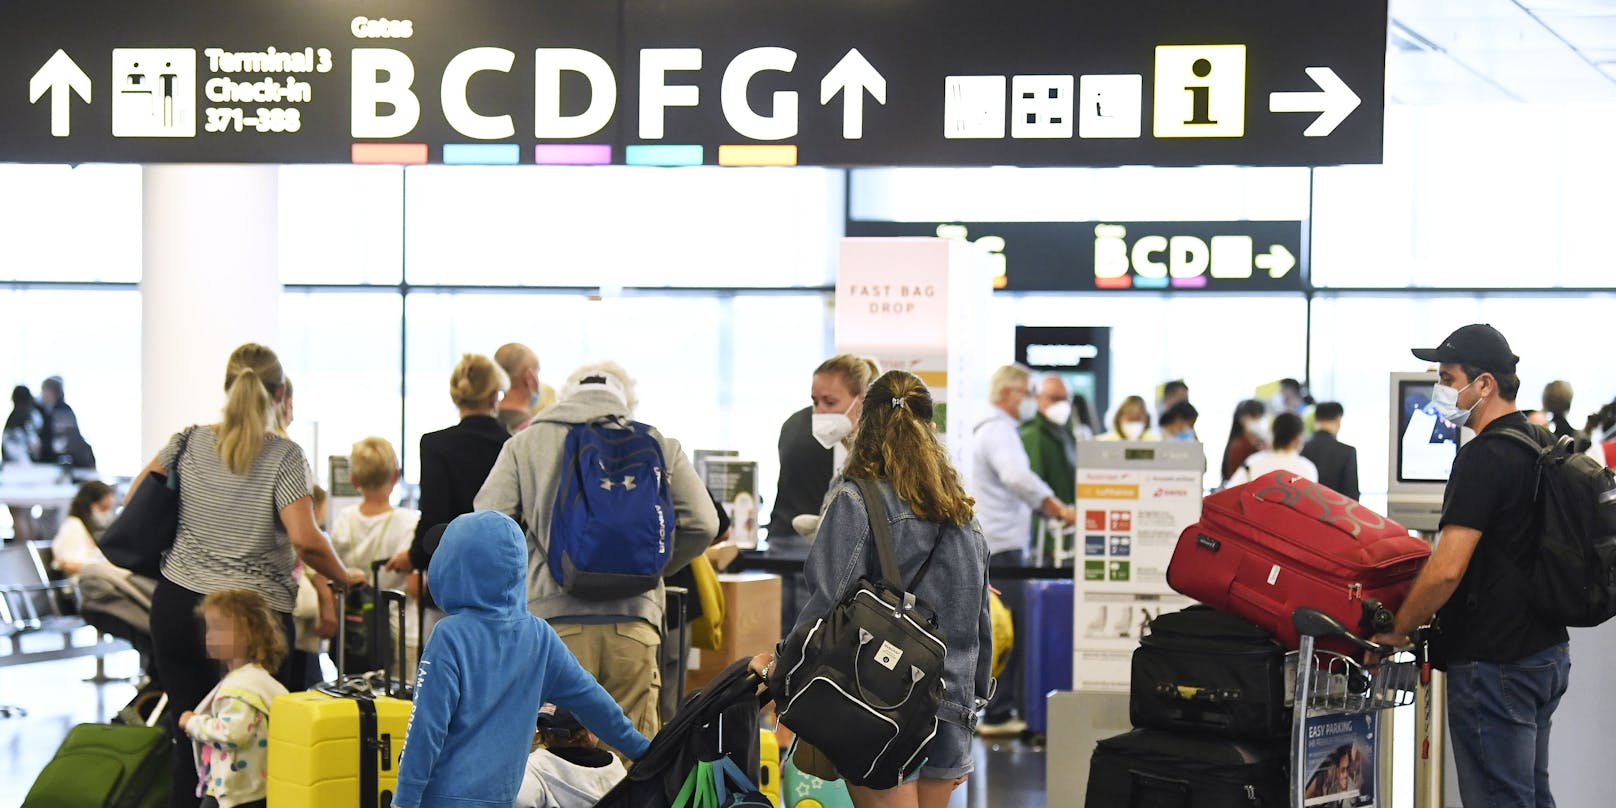 Passagiere am Flughafen Wien-Schwechat. Nun kommen wieder neue Einreise-Regeln.